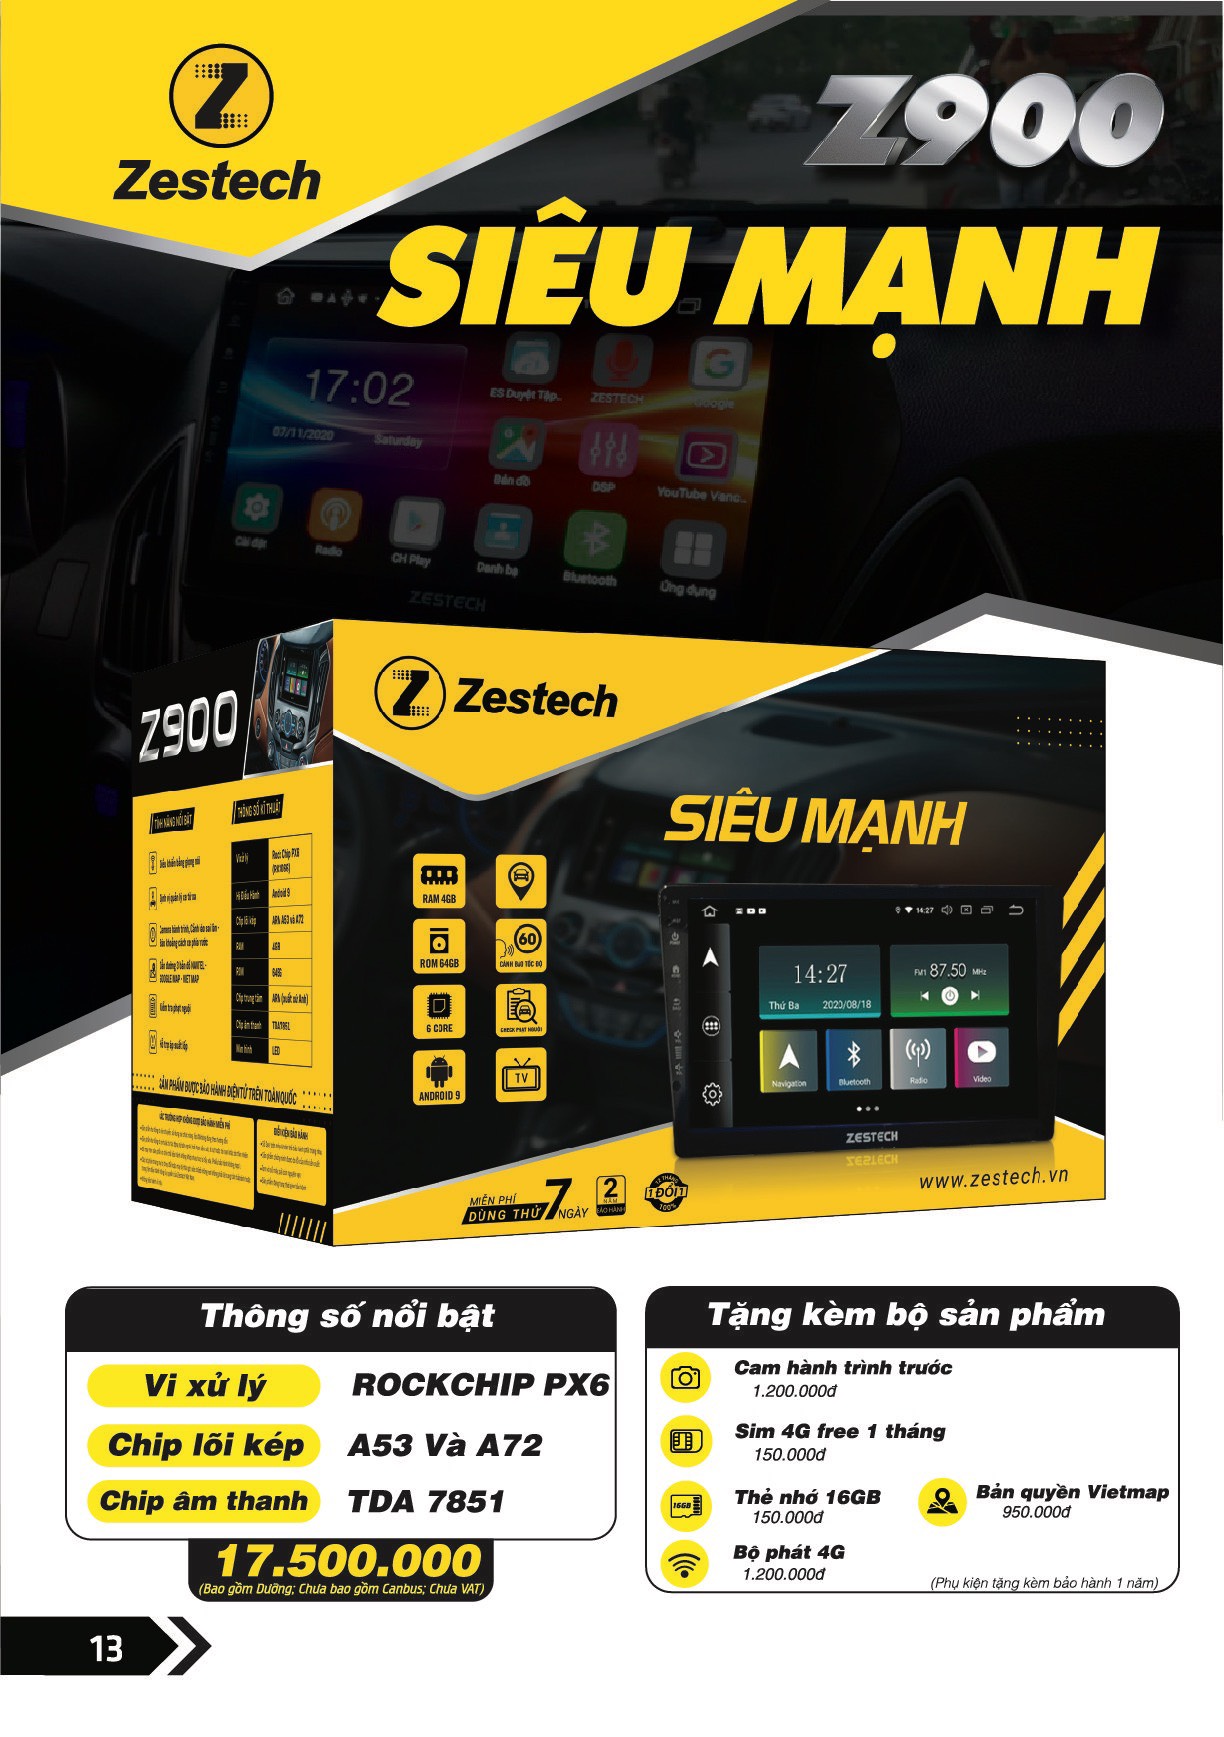 gia-man-hinh-zestech-Z900.jpg